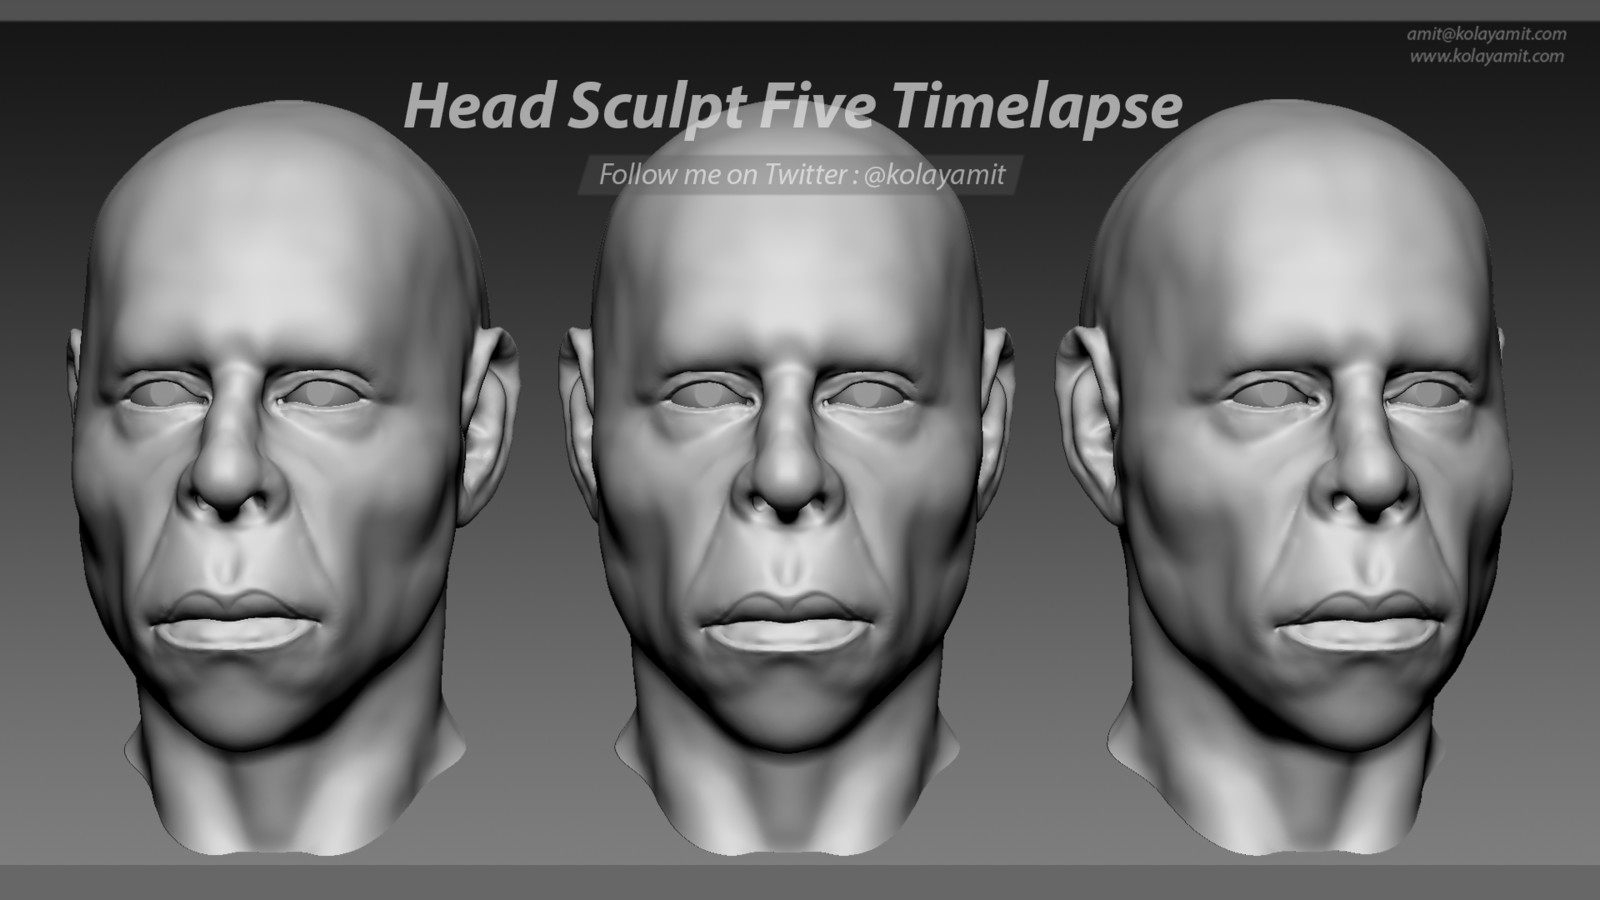 Head Sculpt Five Timelapse